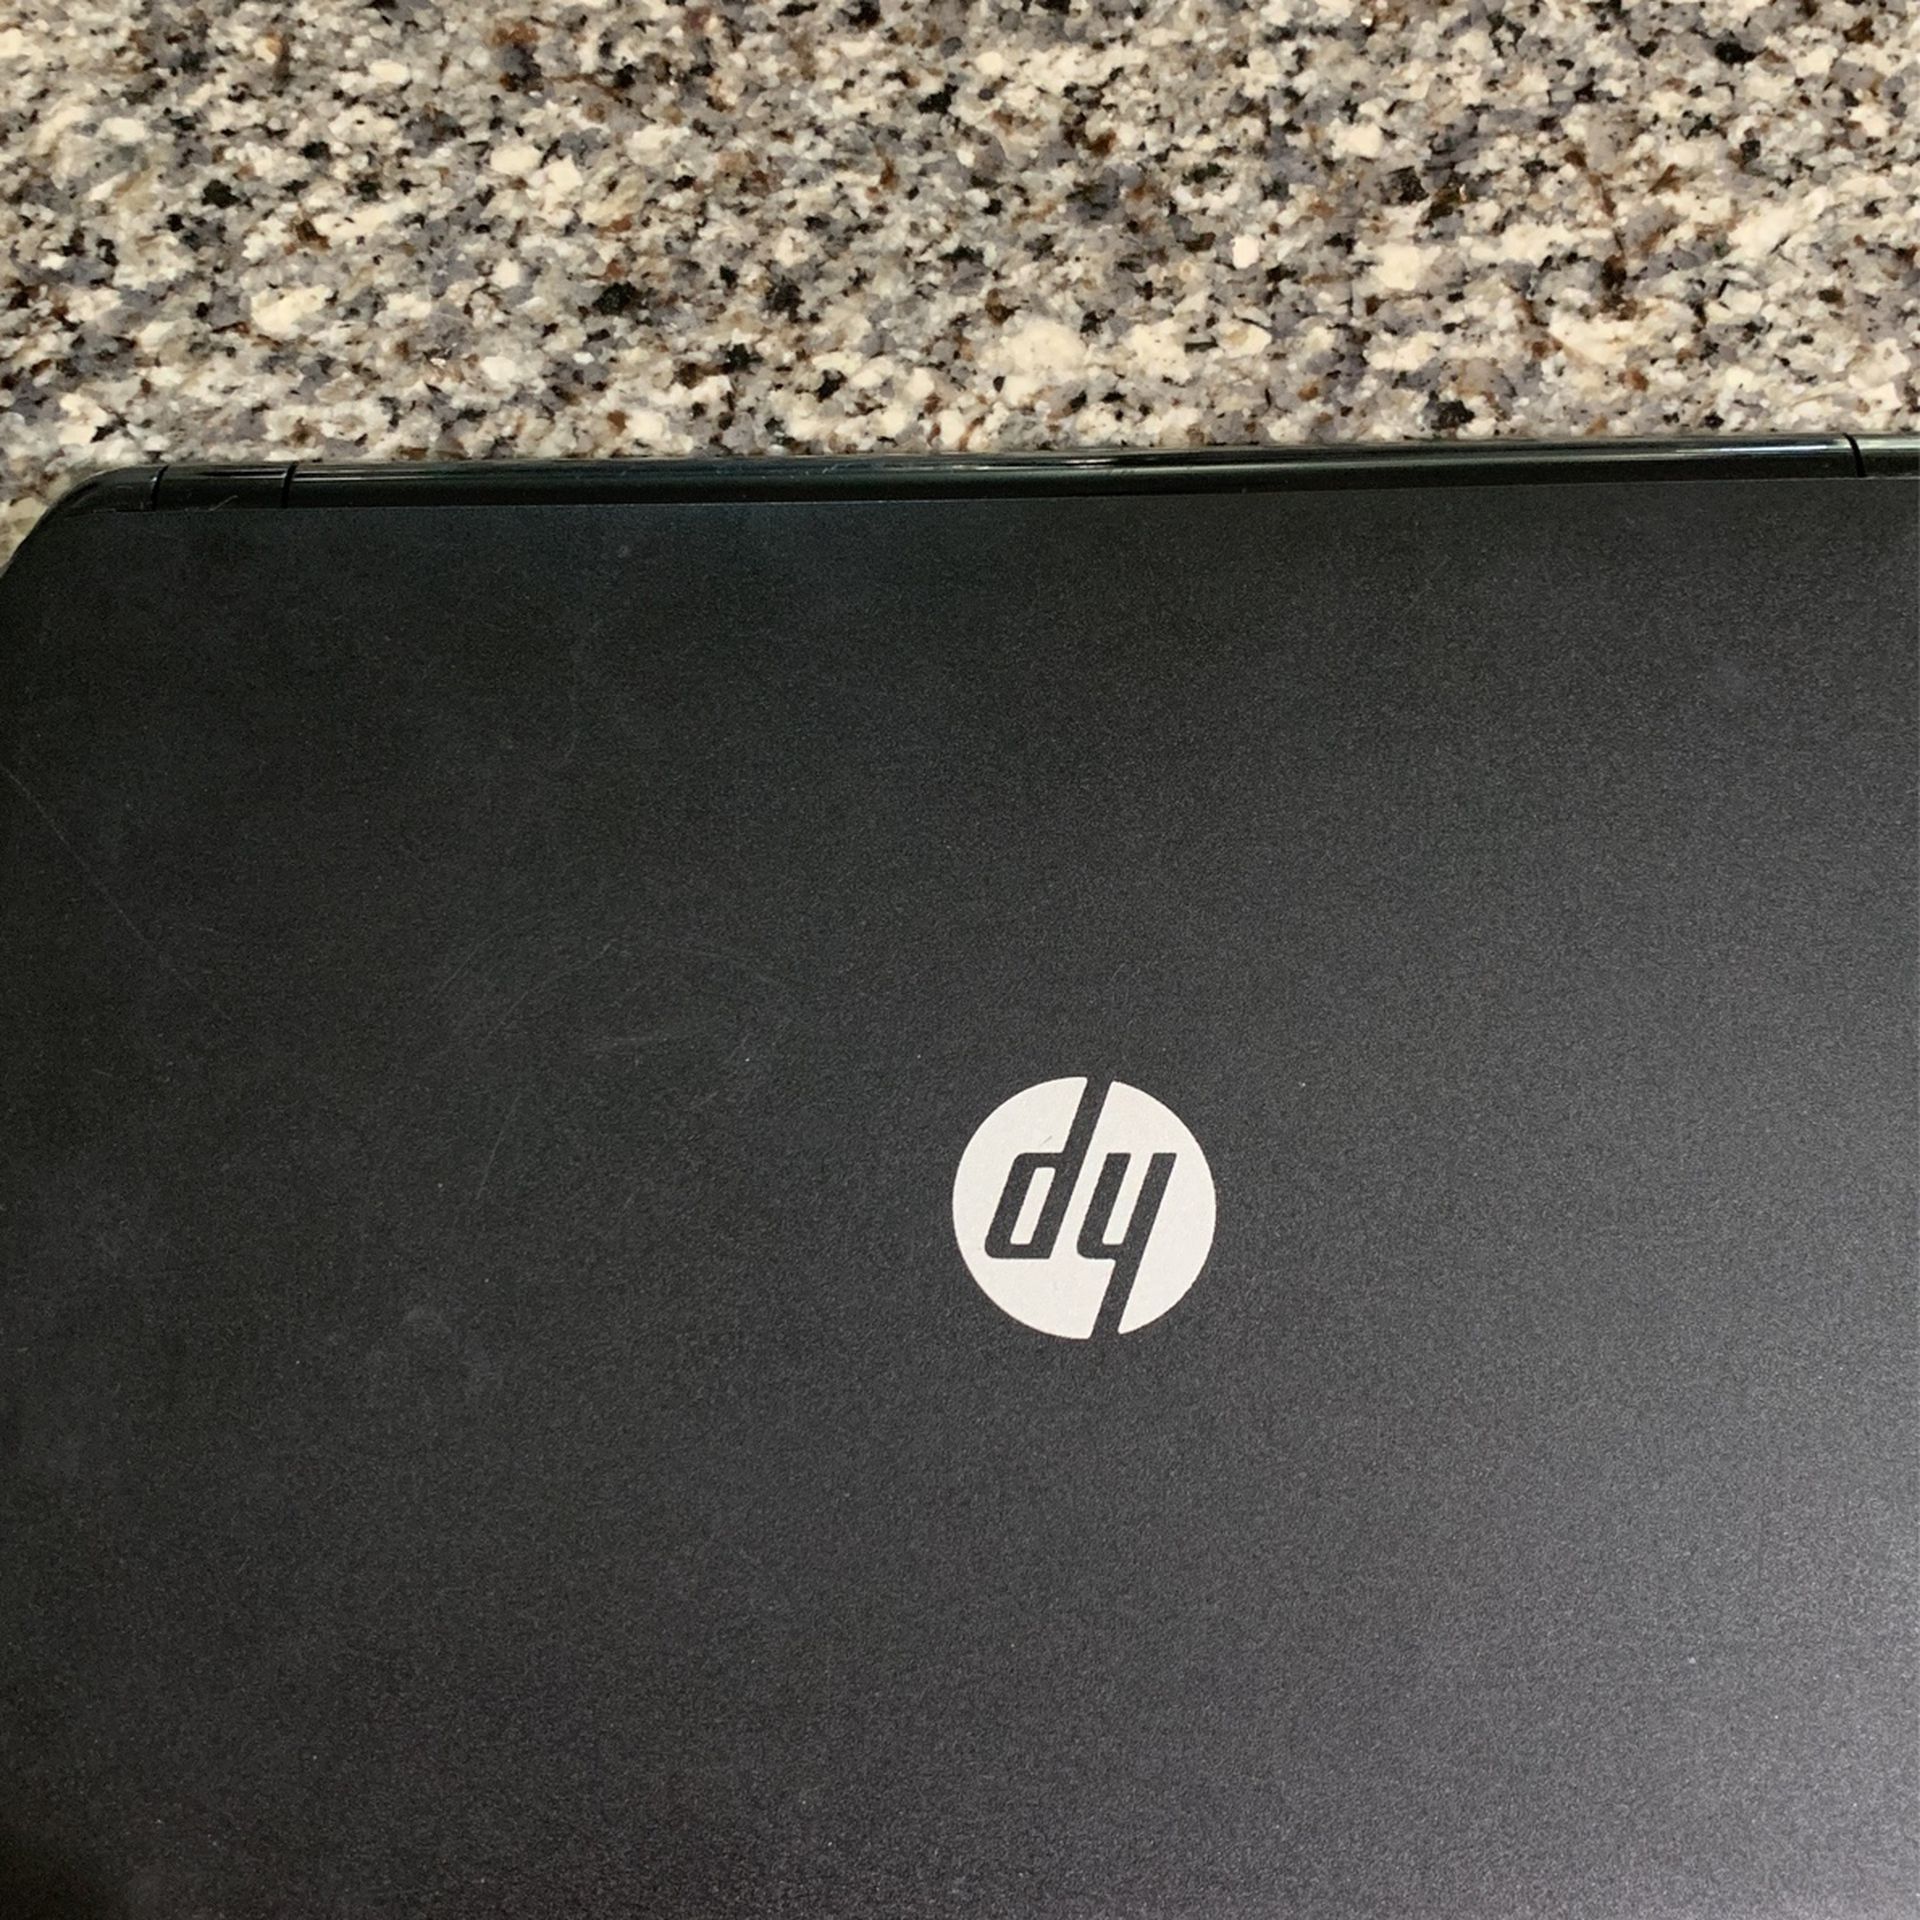 HP touchscreen Laptop